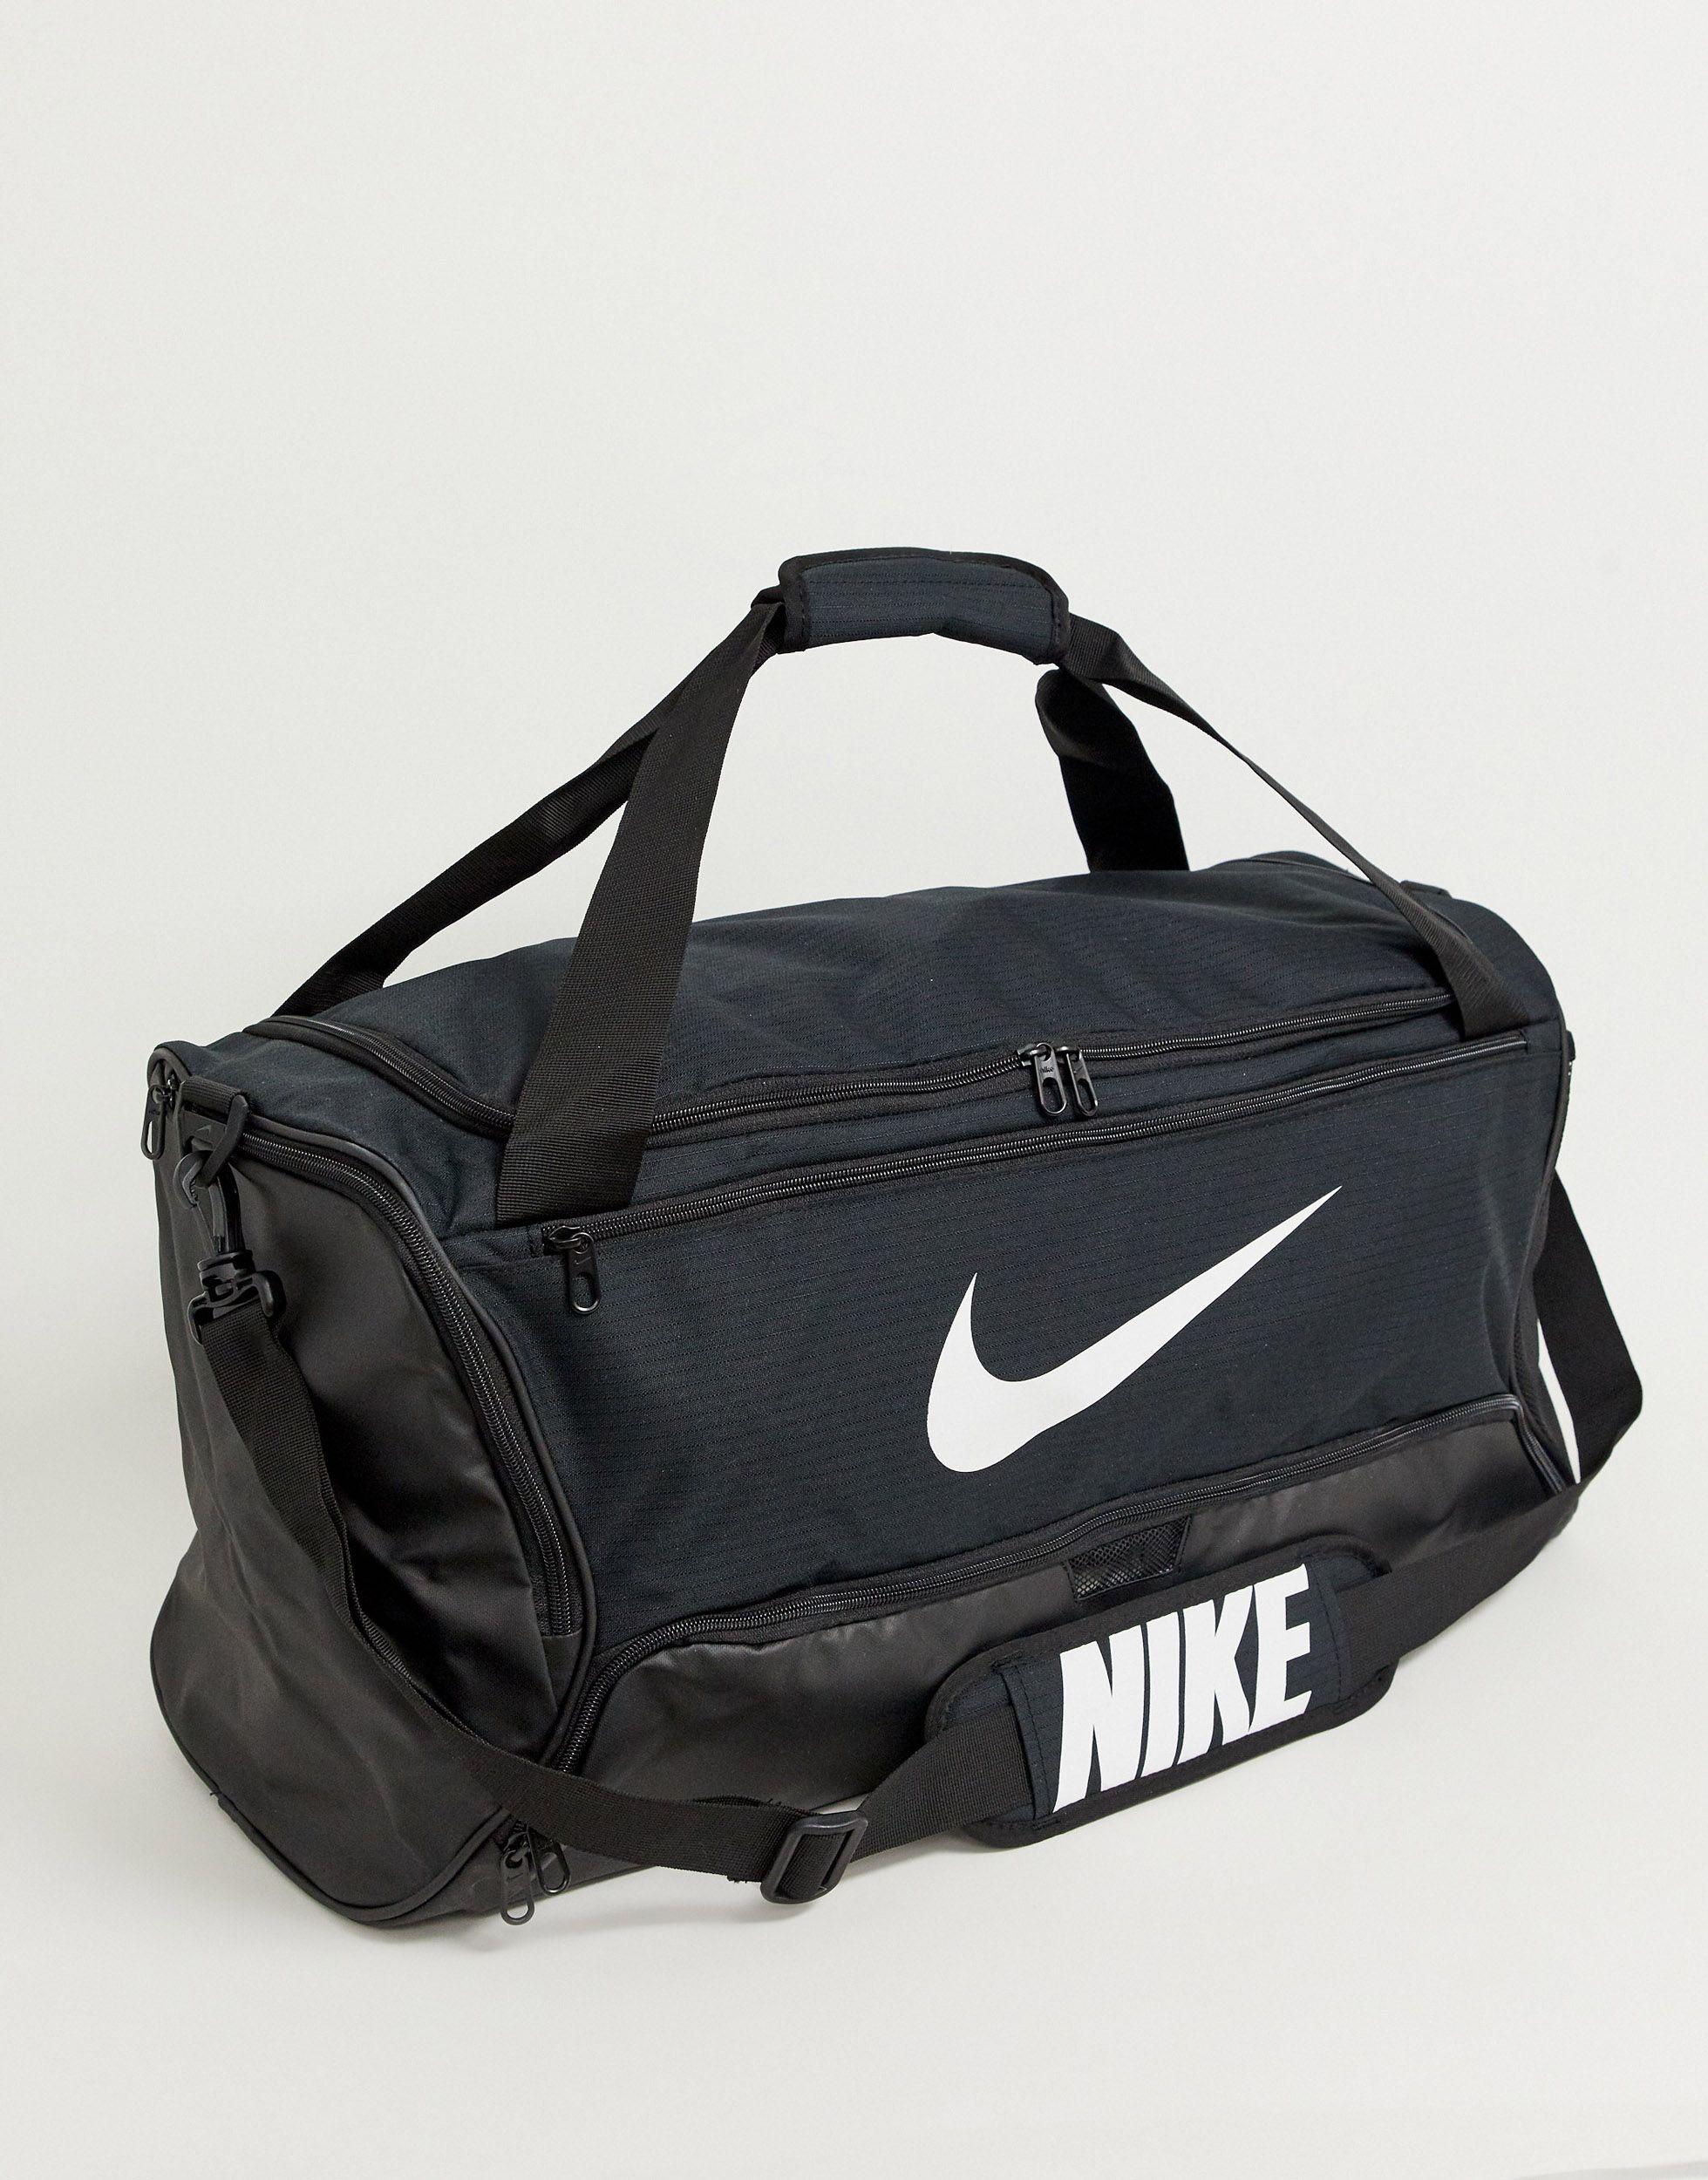 Черная спортивная сумка. Nike Utility сумка. Спорт сумка мужская найк. Сумка Nike Training. 58u8bmkhs2 сумка Nike.